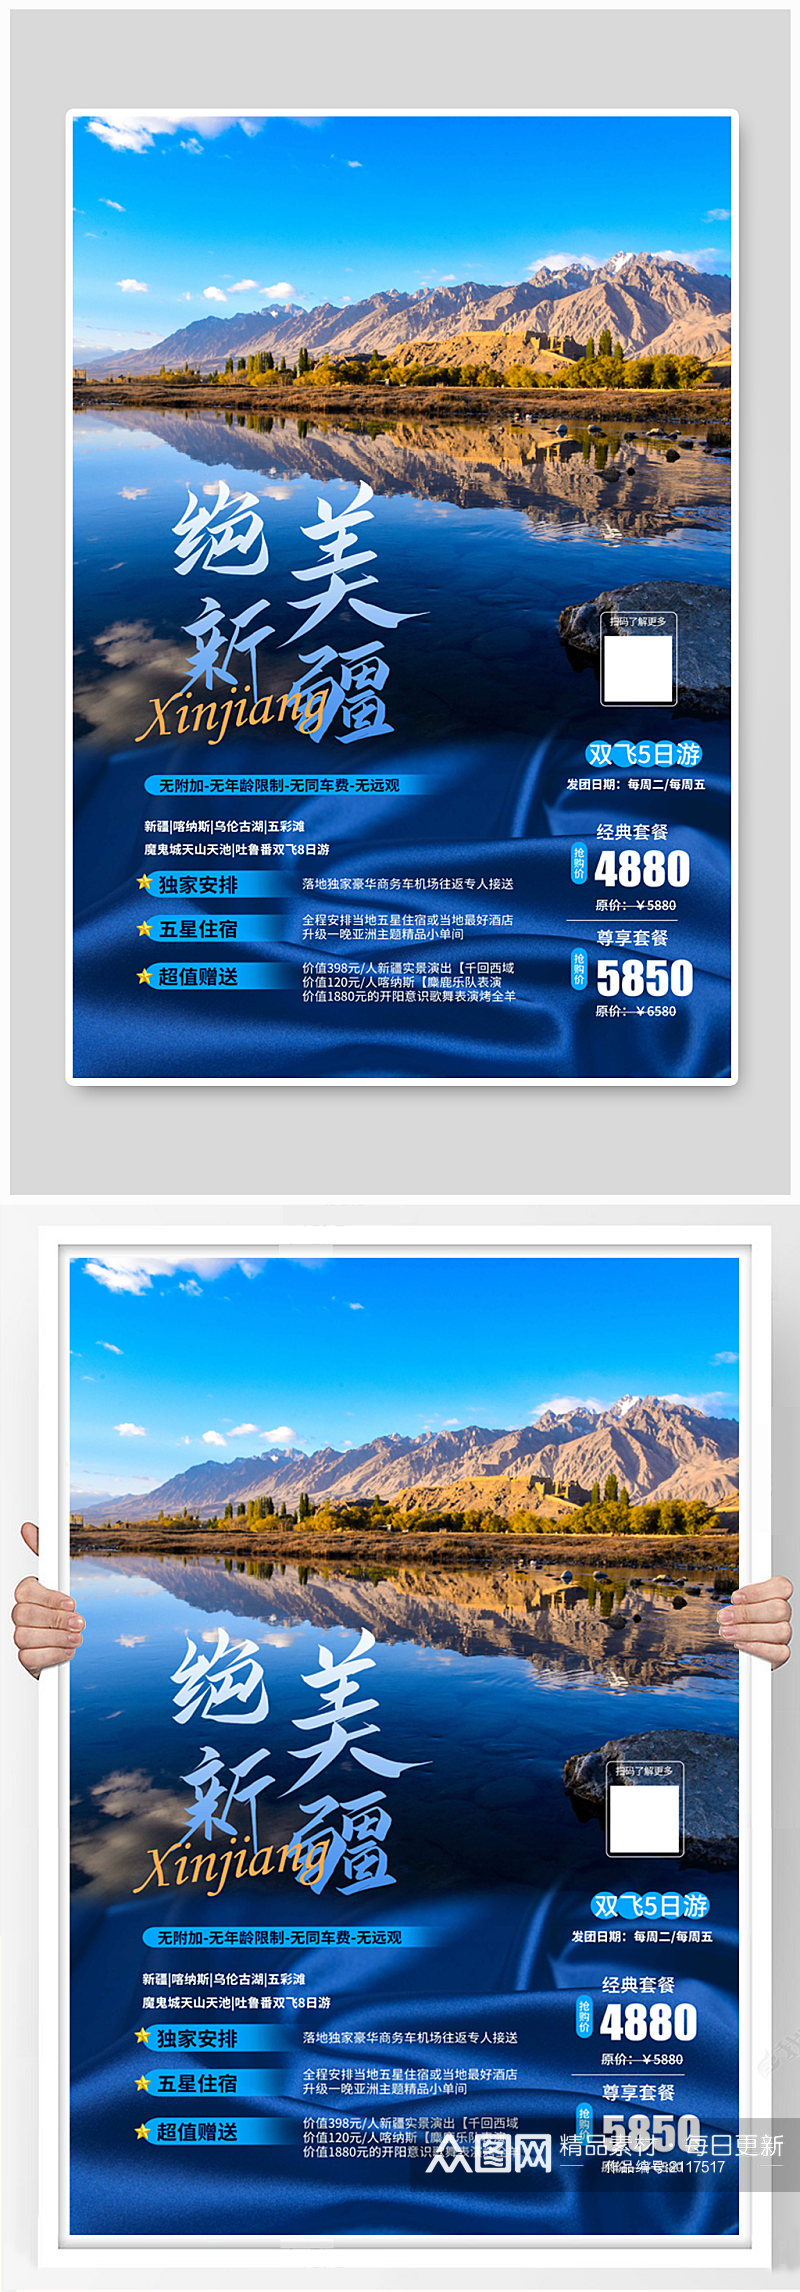 蓝色绝美新疆国内旅游宣传海报素材